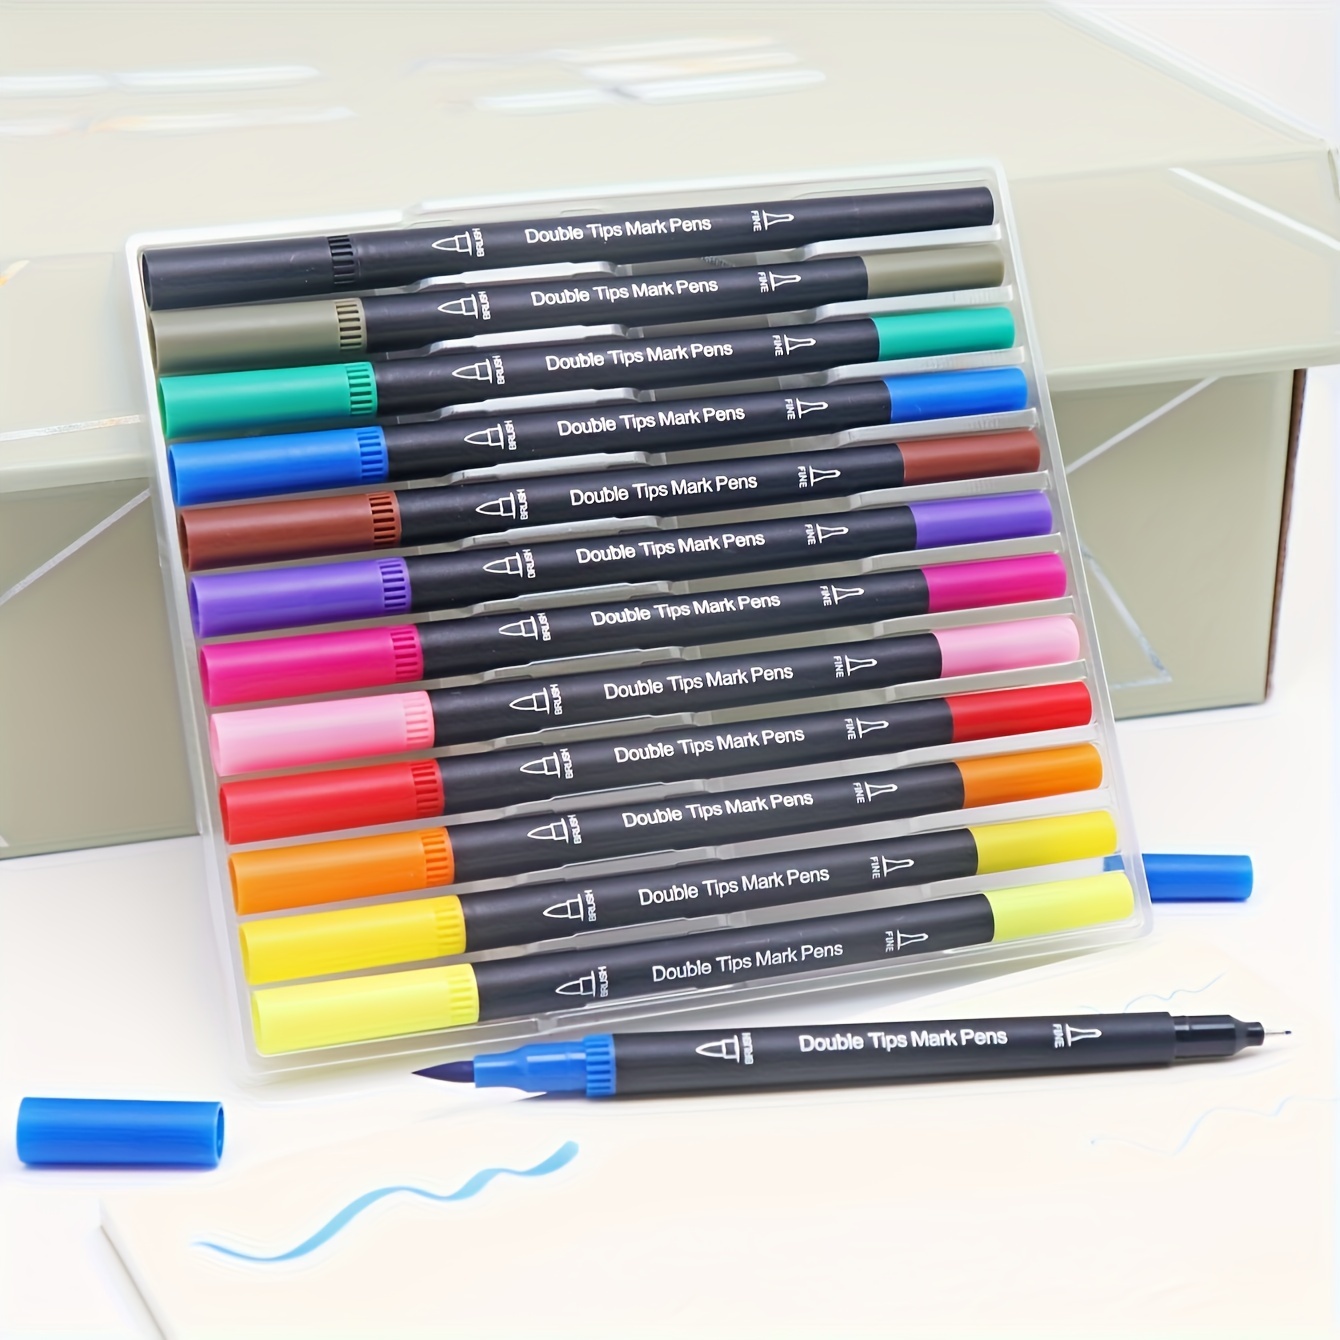 Brush Pens Markers For Adult Coloring Books dual Tip Brush - Temu